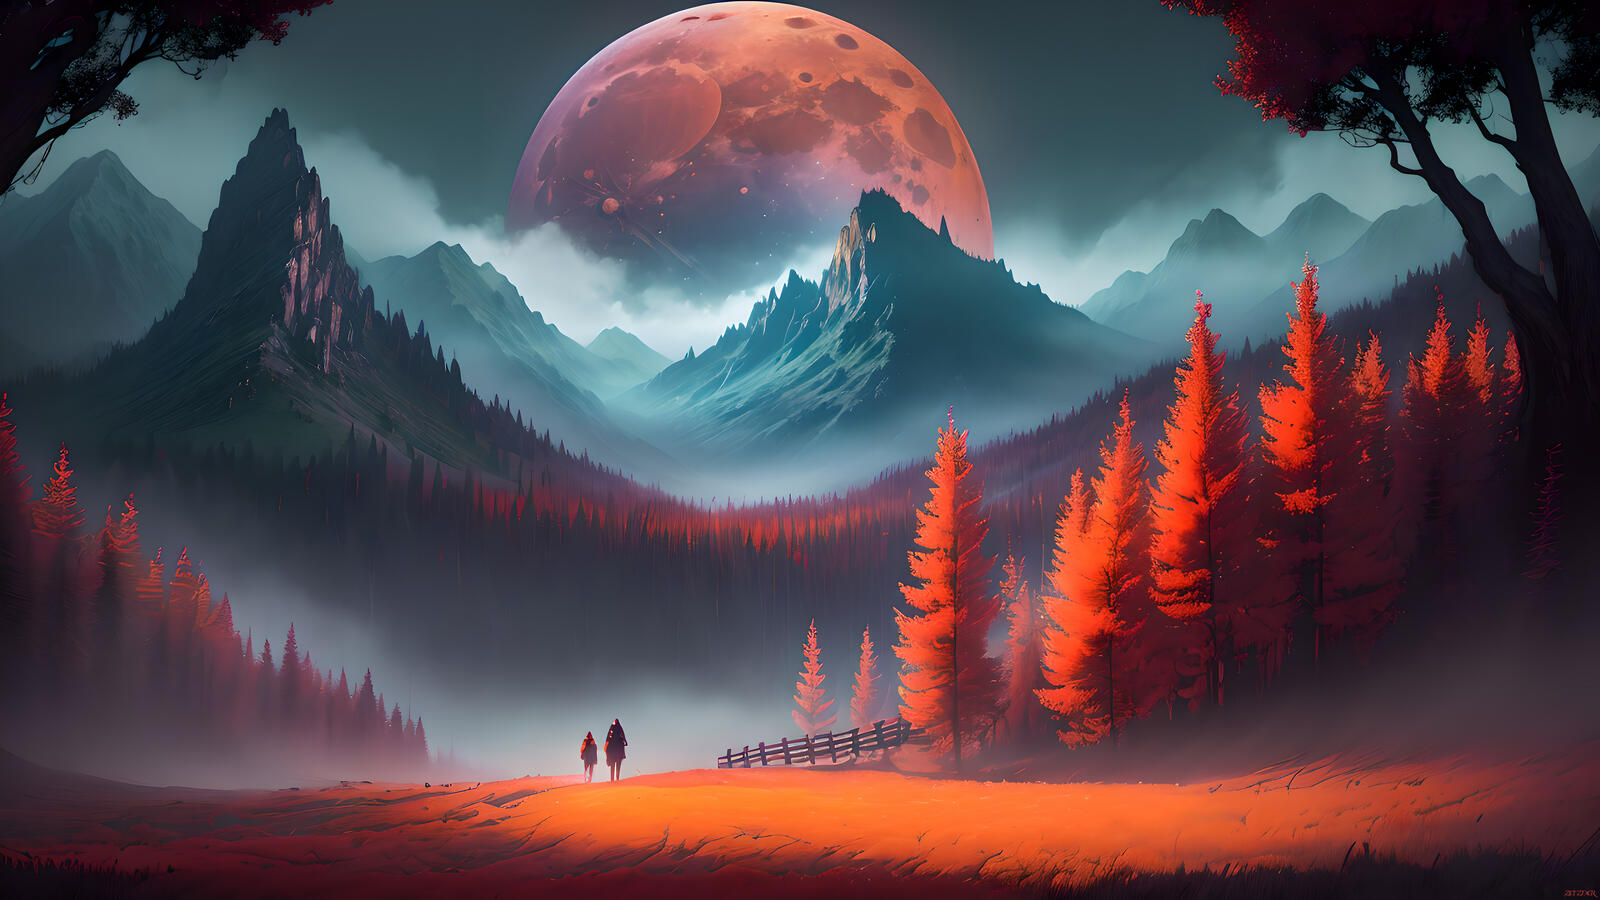 Бесплатное фото Фэнтезийный пейзаж с людьми идущими в горы на фоне огромной Луны